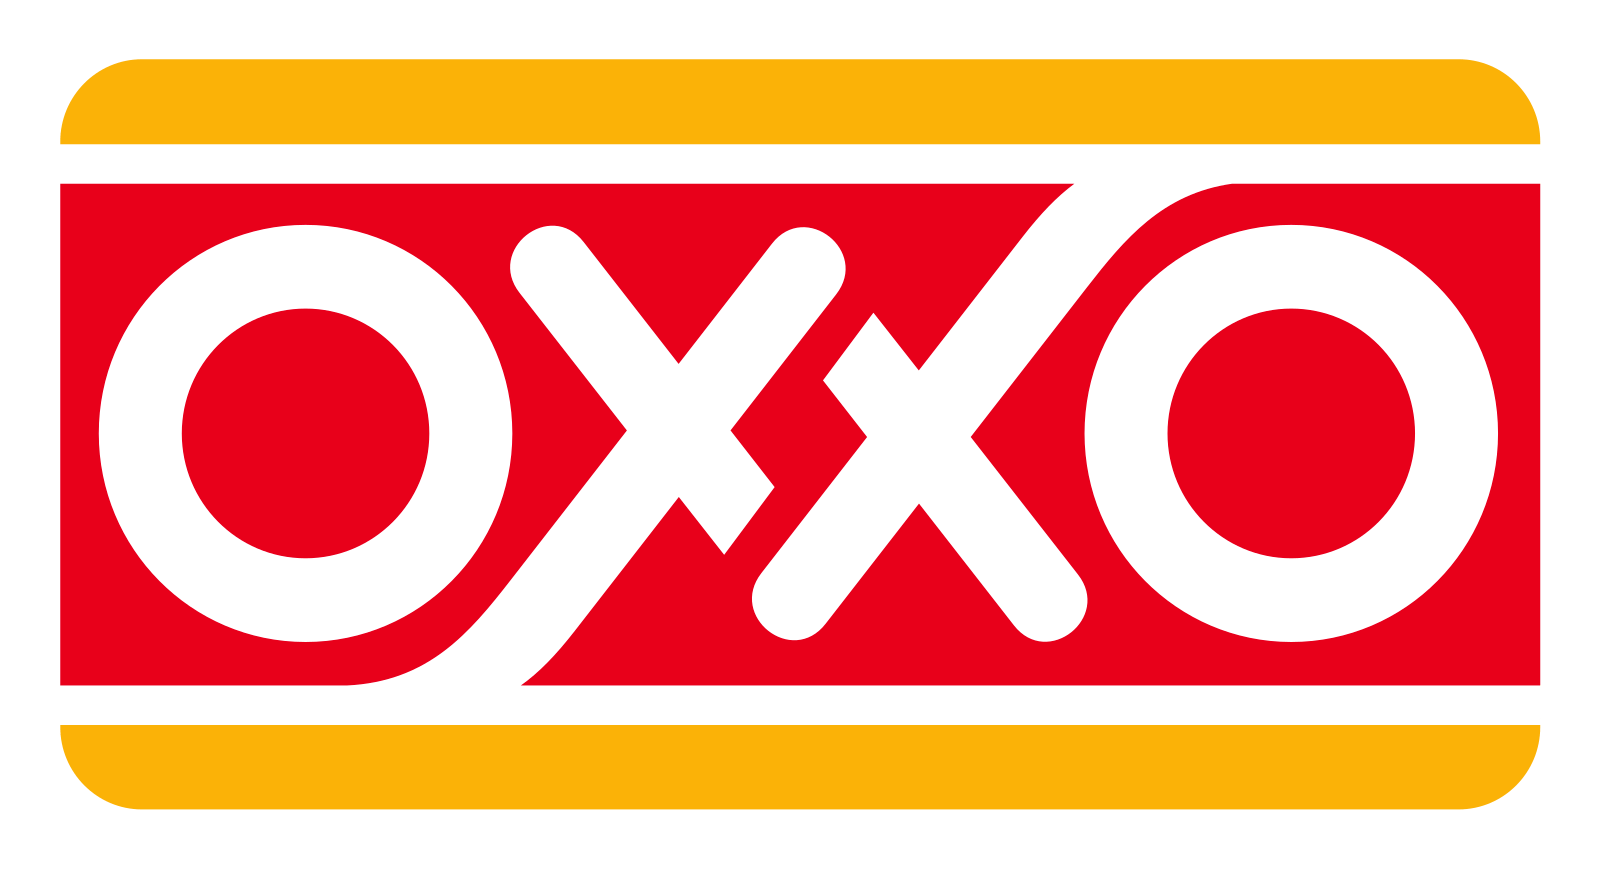 OXXO 